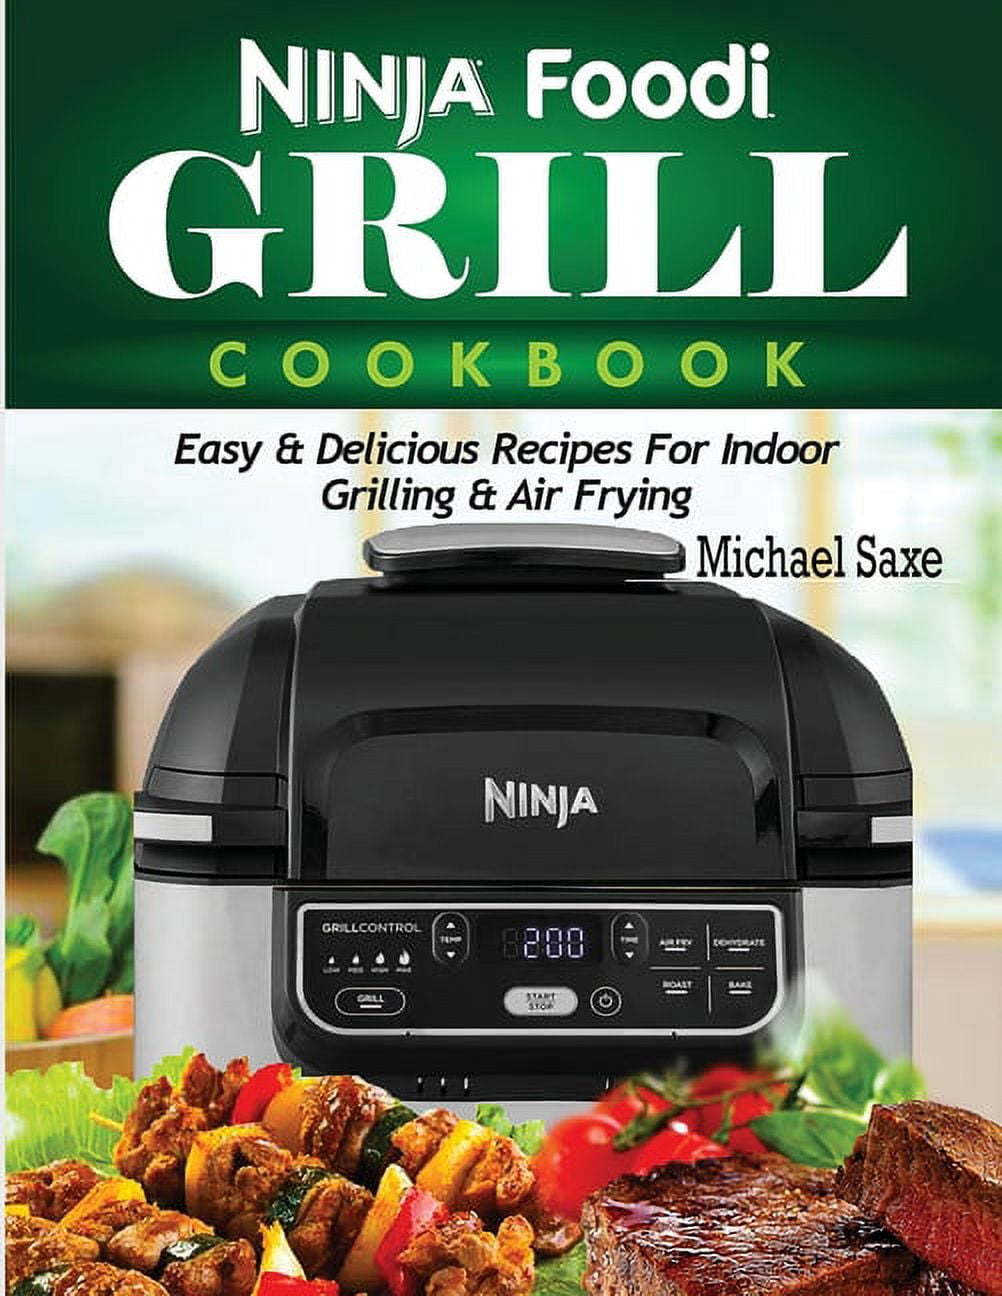 Buy Ninja Foodi Grill Cookbook 2020: The Complete Ninja Foodi